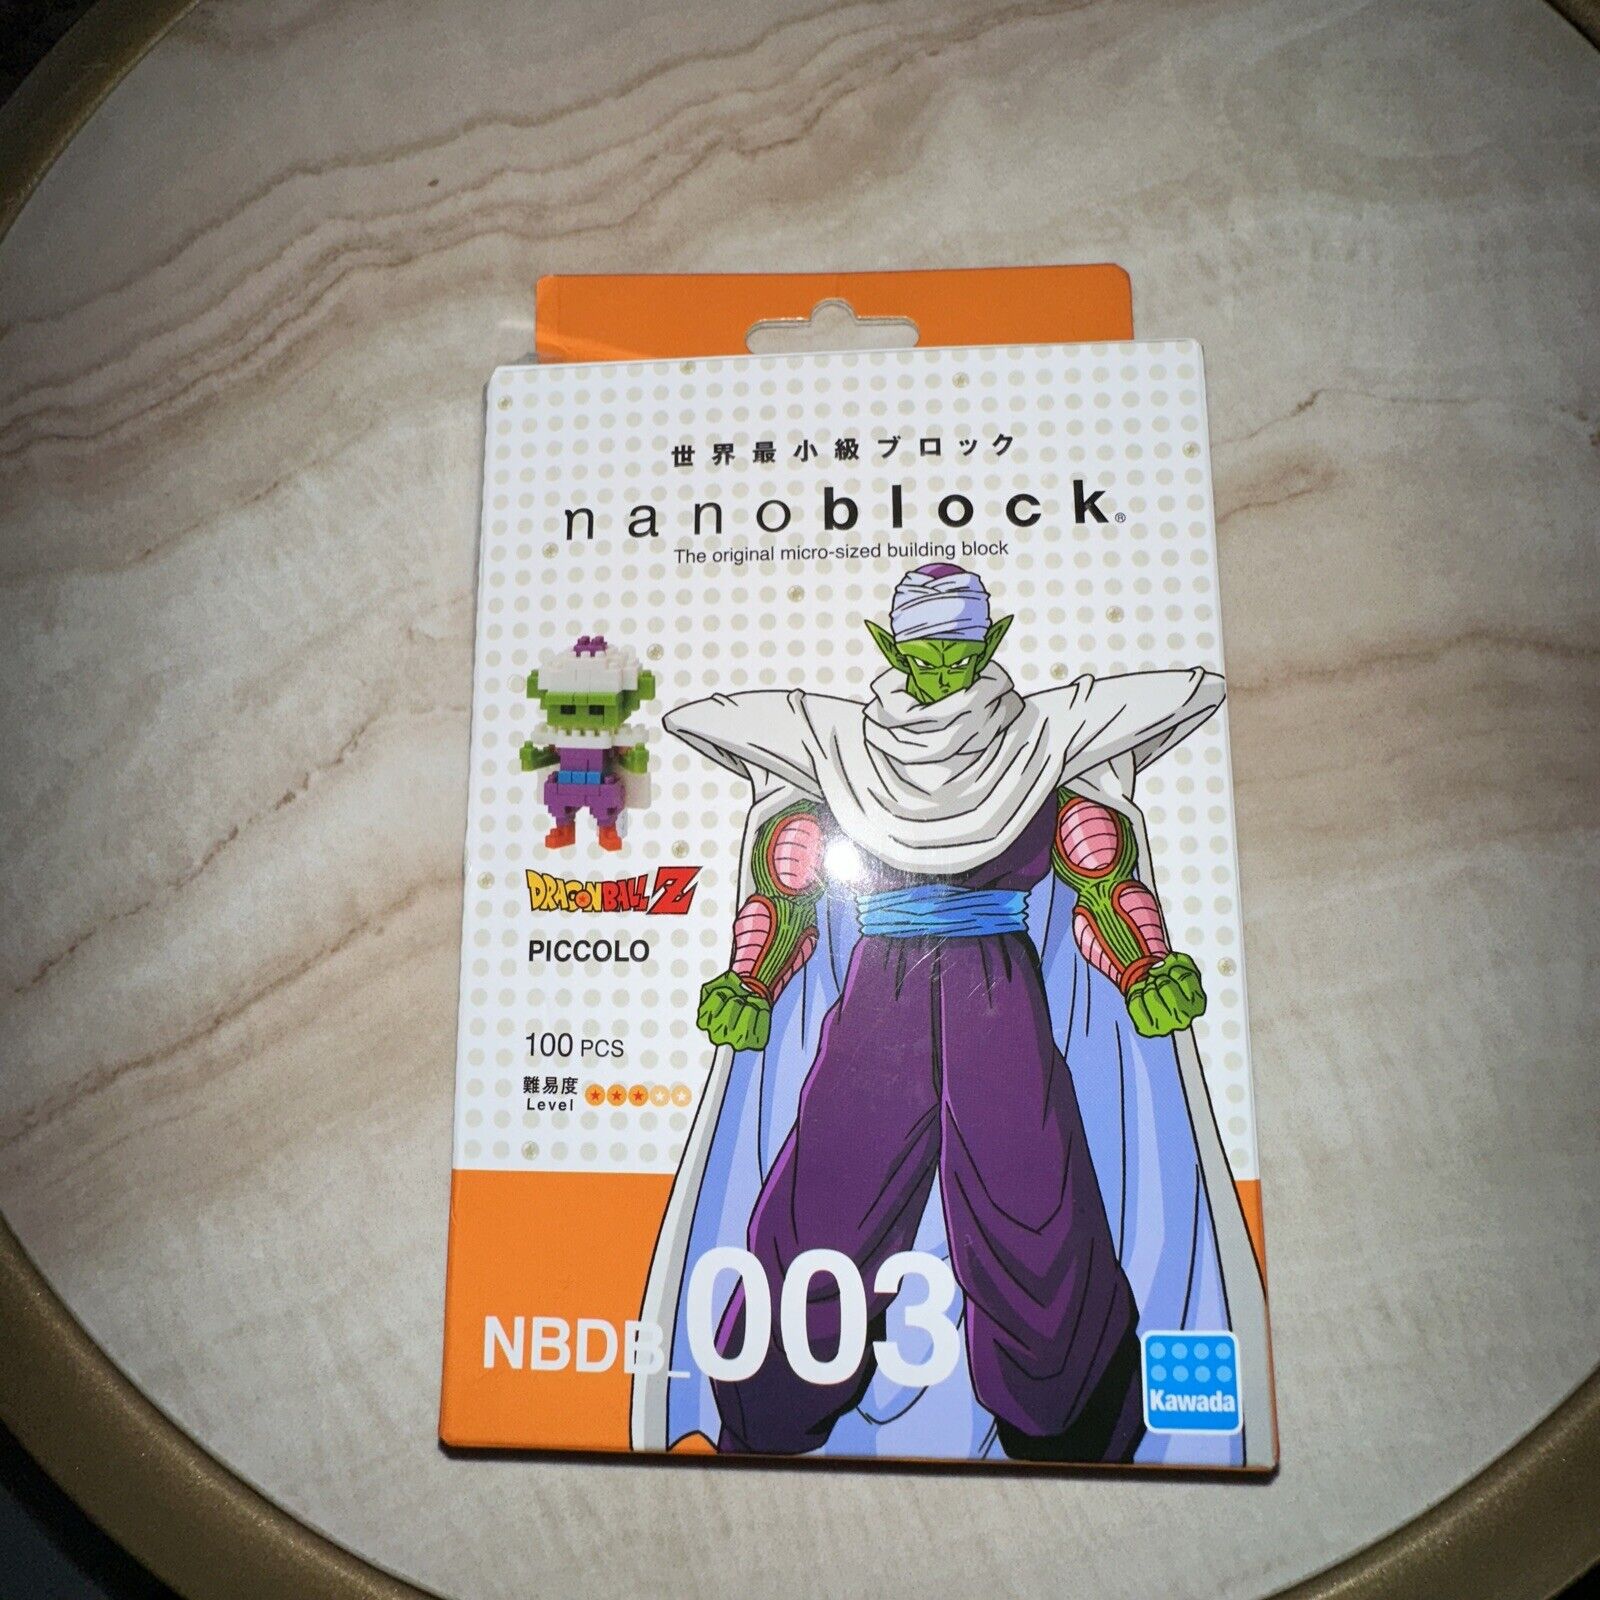 Nanoblock Dragon Ball Z PICCOLO 100 pcs Building Block Open Box